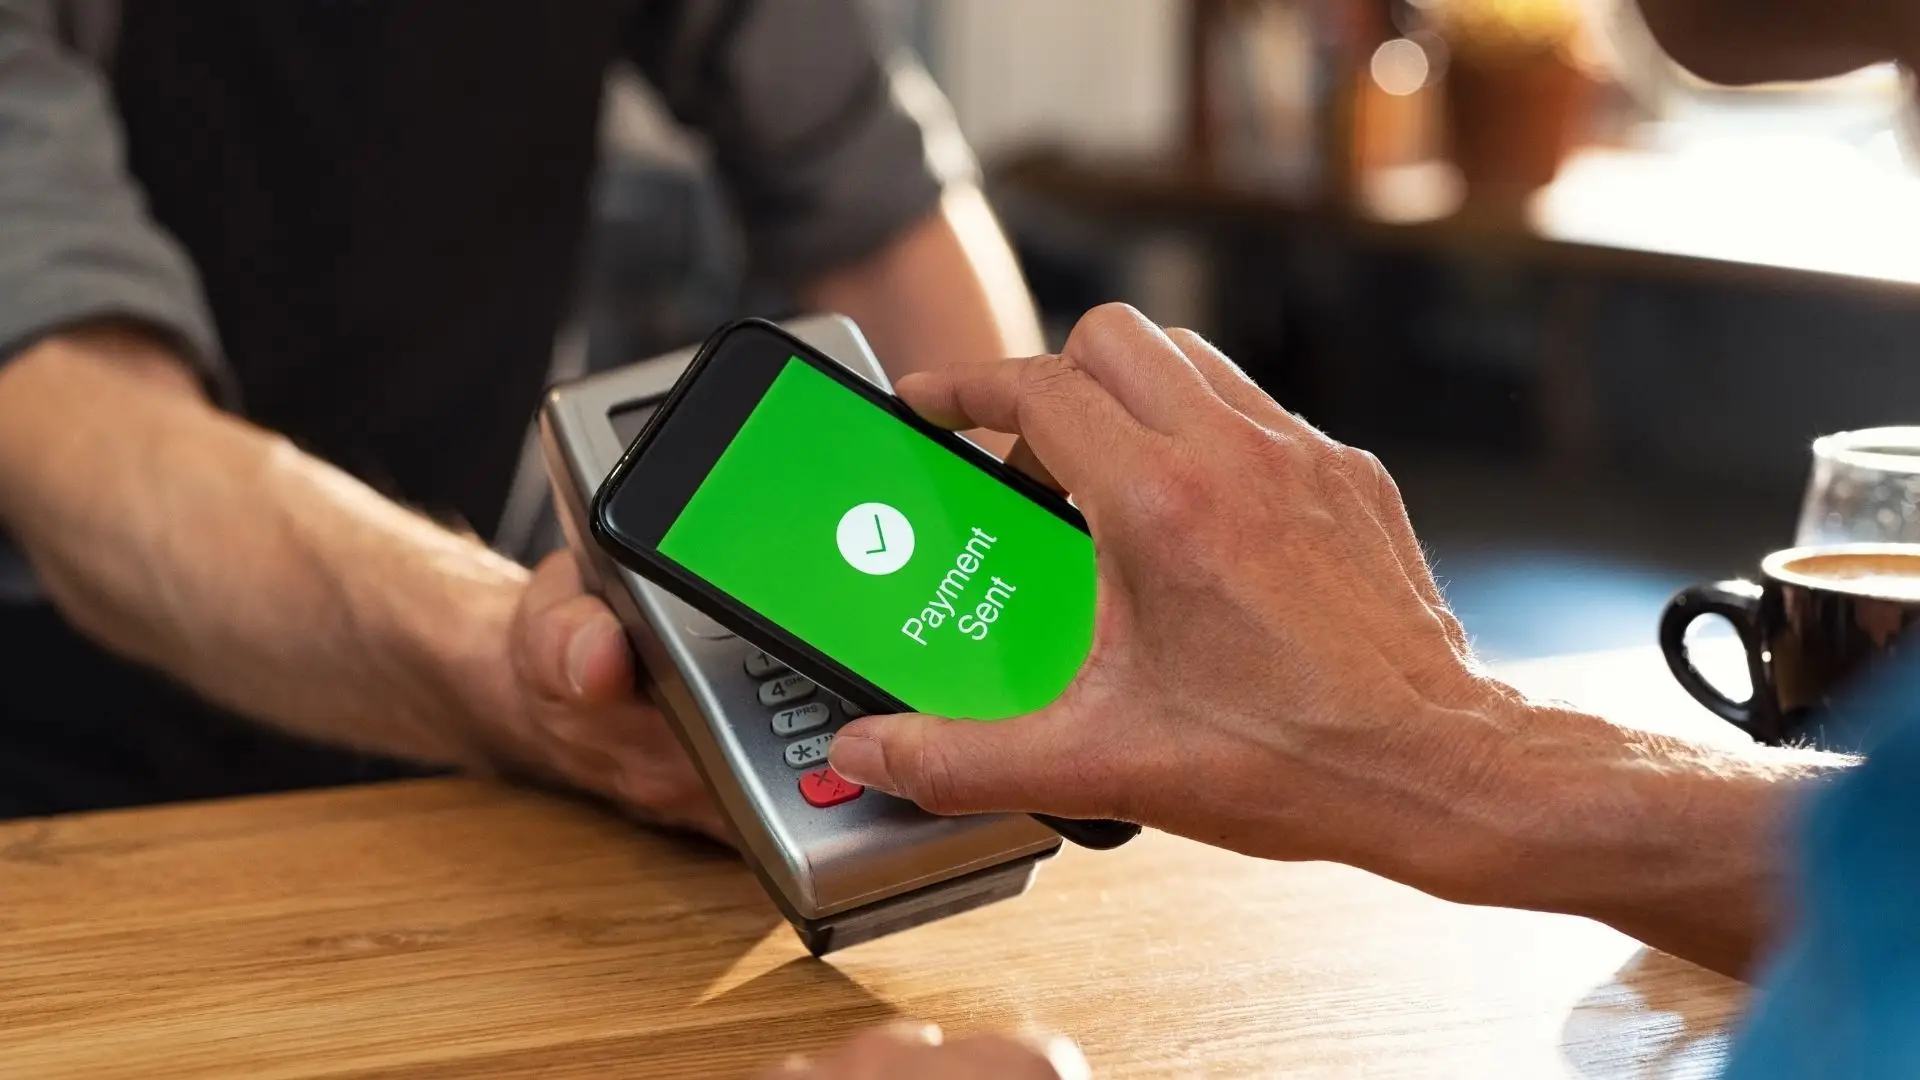 Homem faz pagamento usando NFC no celular em máquina de cartão